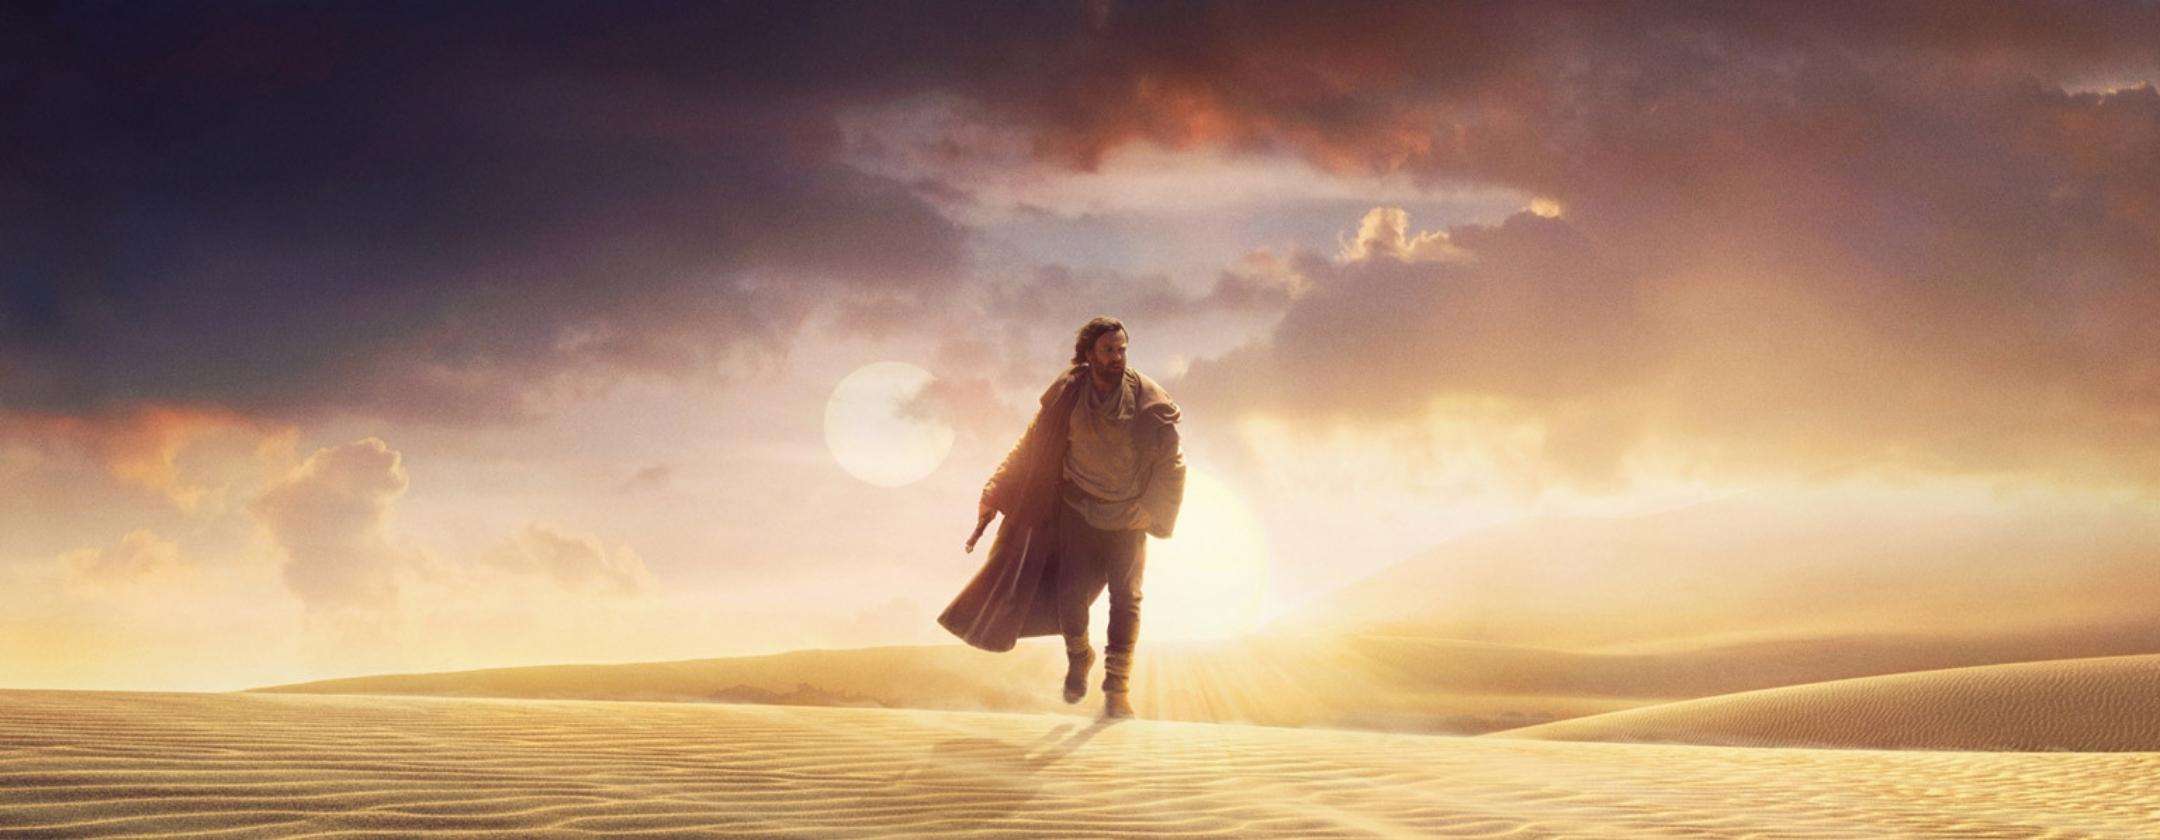 Obi-Wan Kenobi: tutte le novità della serie Star Wars in arrivo su Disney+